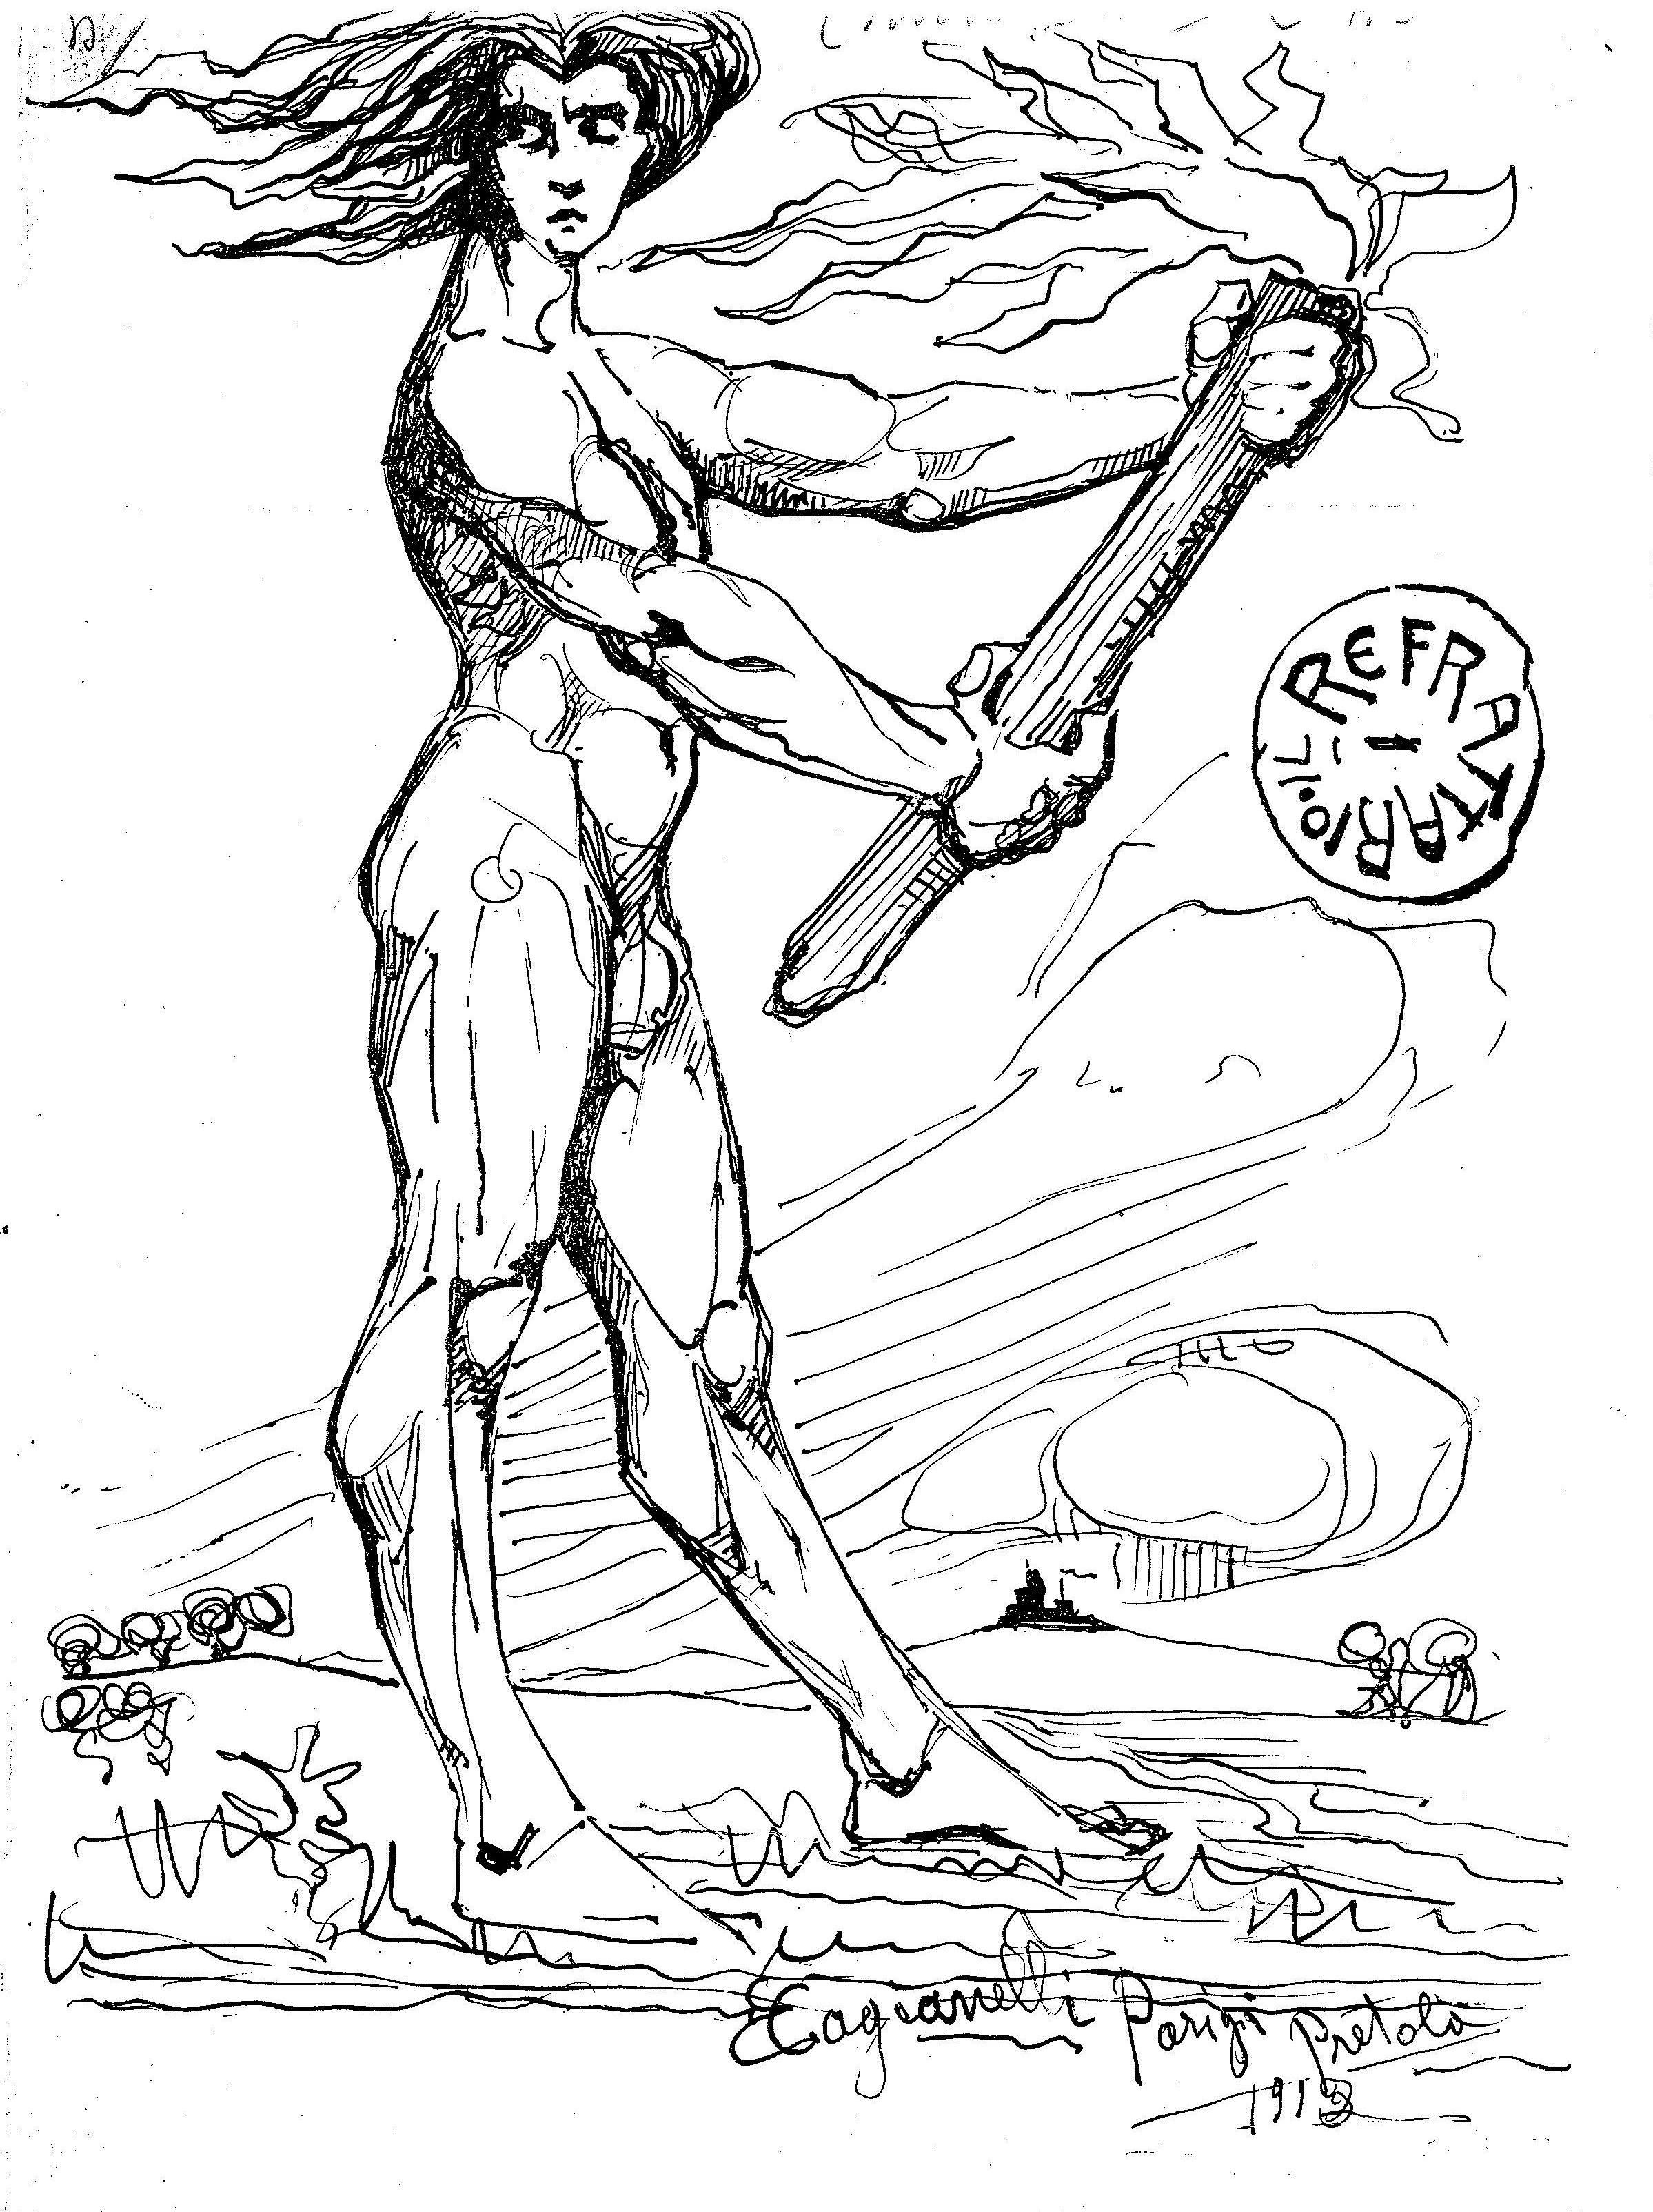 Copertina della rivista "Il Refrattario" del 1913